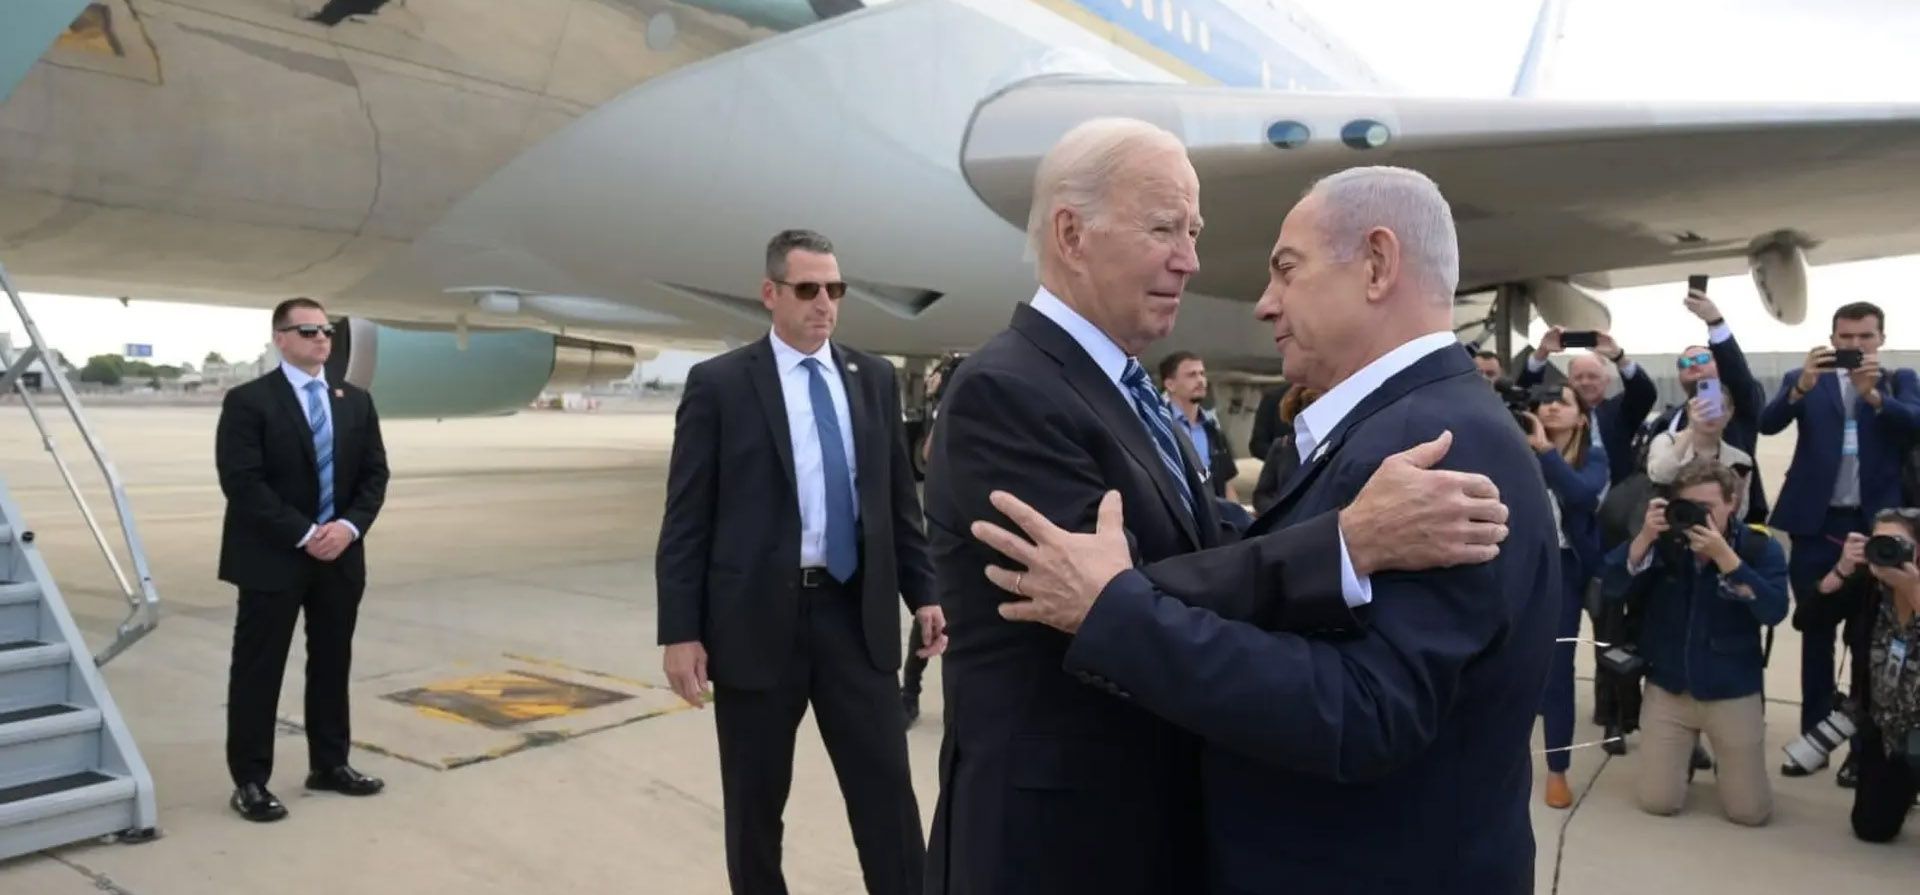 Lod, Israel. Joe Biden, el presidente de Estados Unidos, es recibido por Benjamin Netanyahu, el primer ministro de Israel, a su llegada al aeropuerto Ben Gurion para conversar sobre el conflicto. Fotografía: Avi Ohayon/Israel Gpo/ZUMA Press Wire/Shutterstock